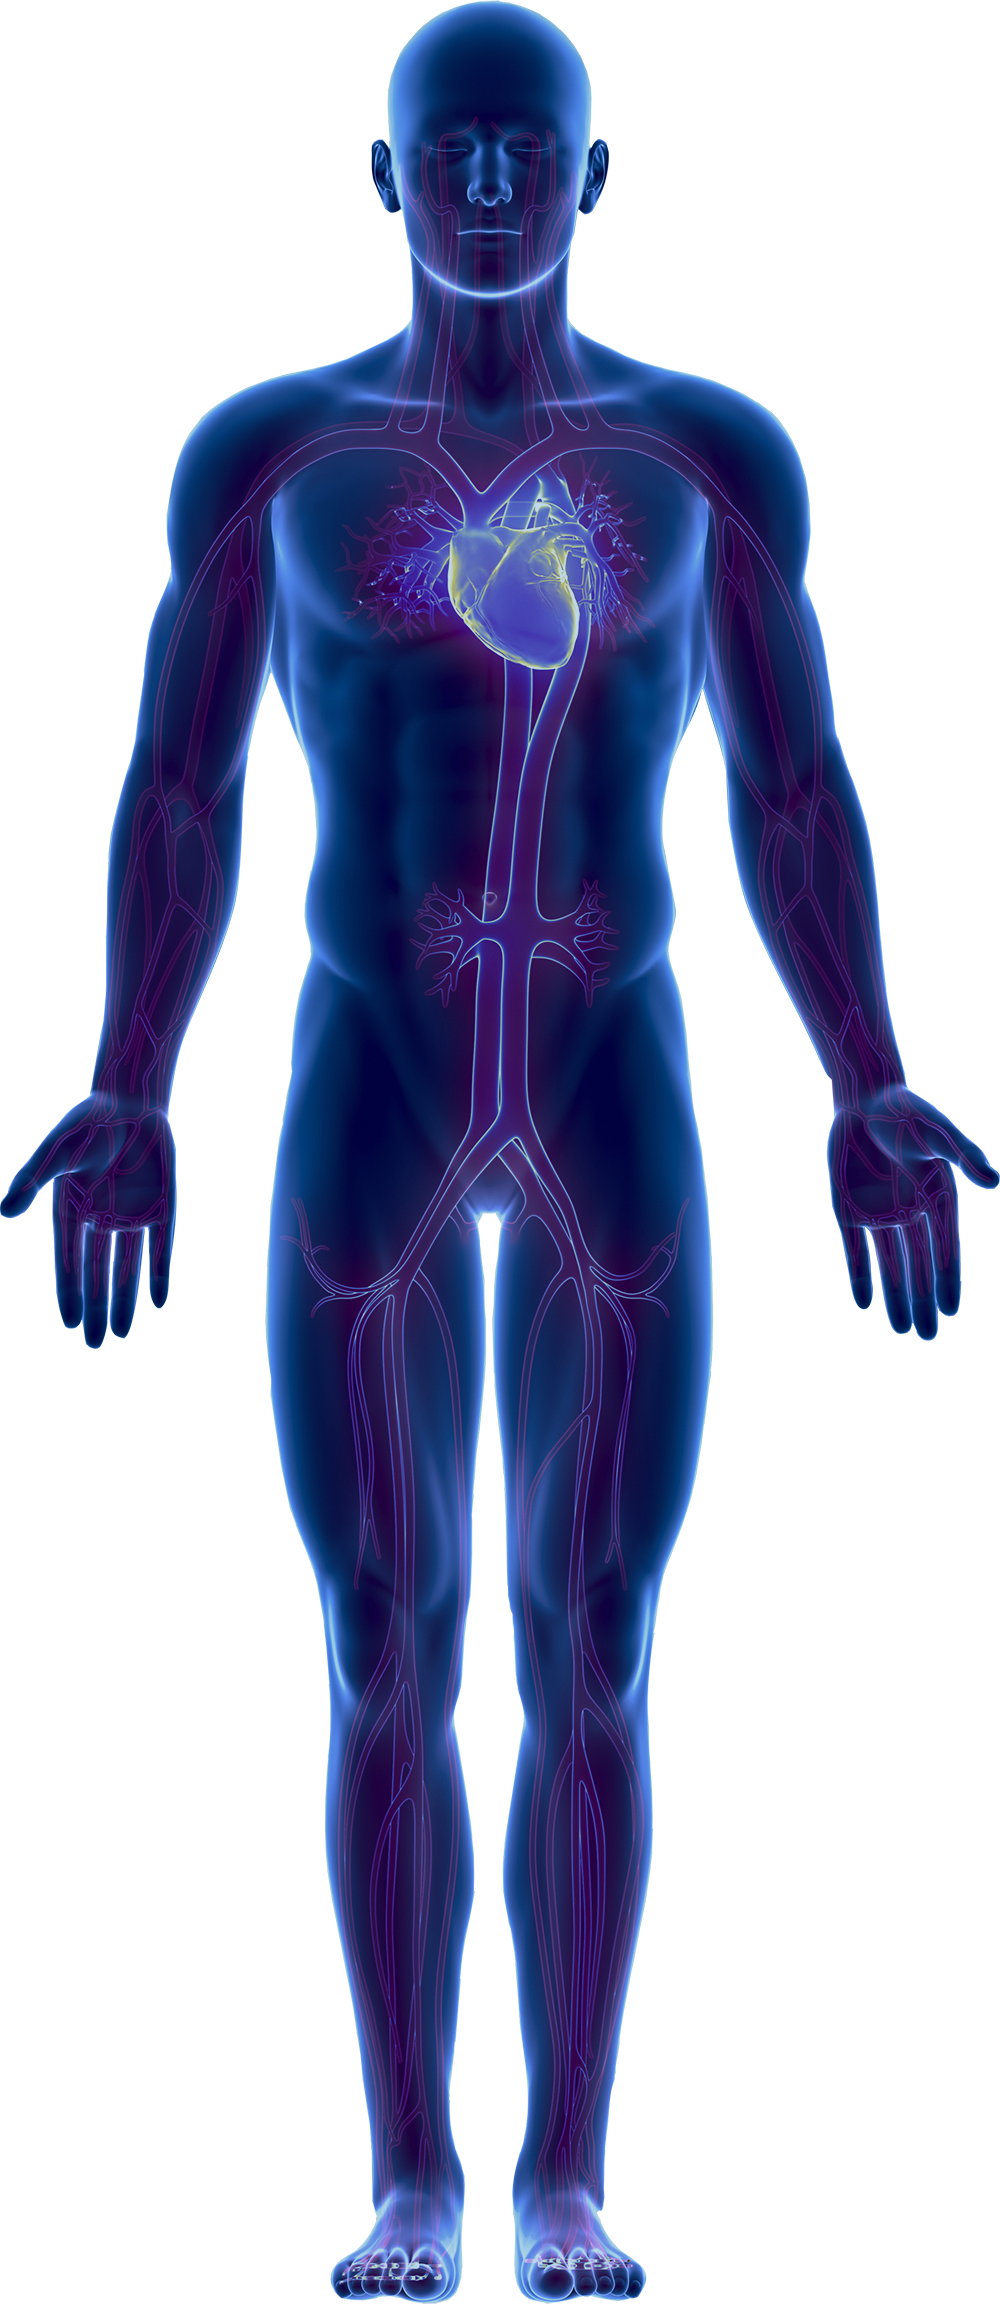 Человеческое тело бесплатно PNG Image